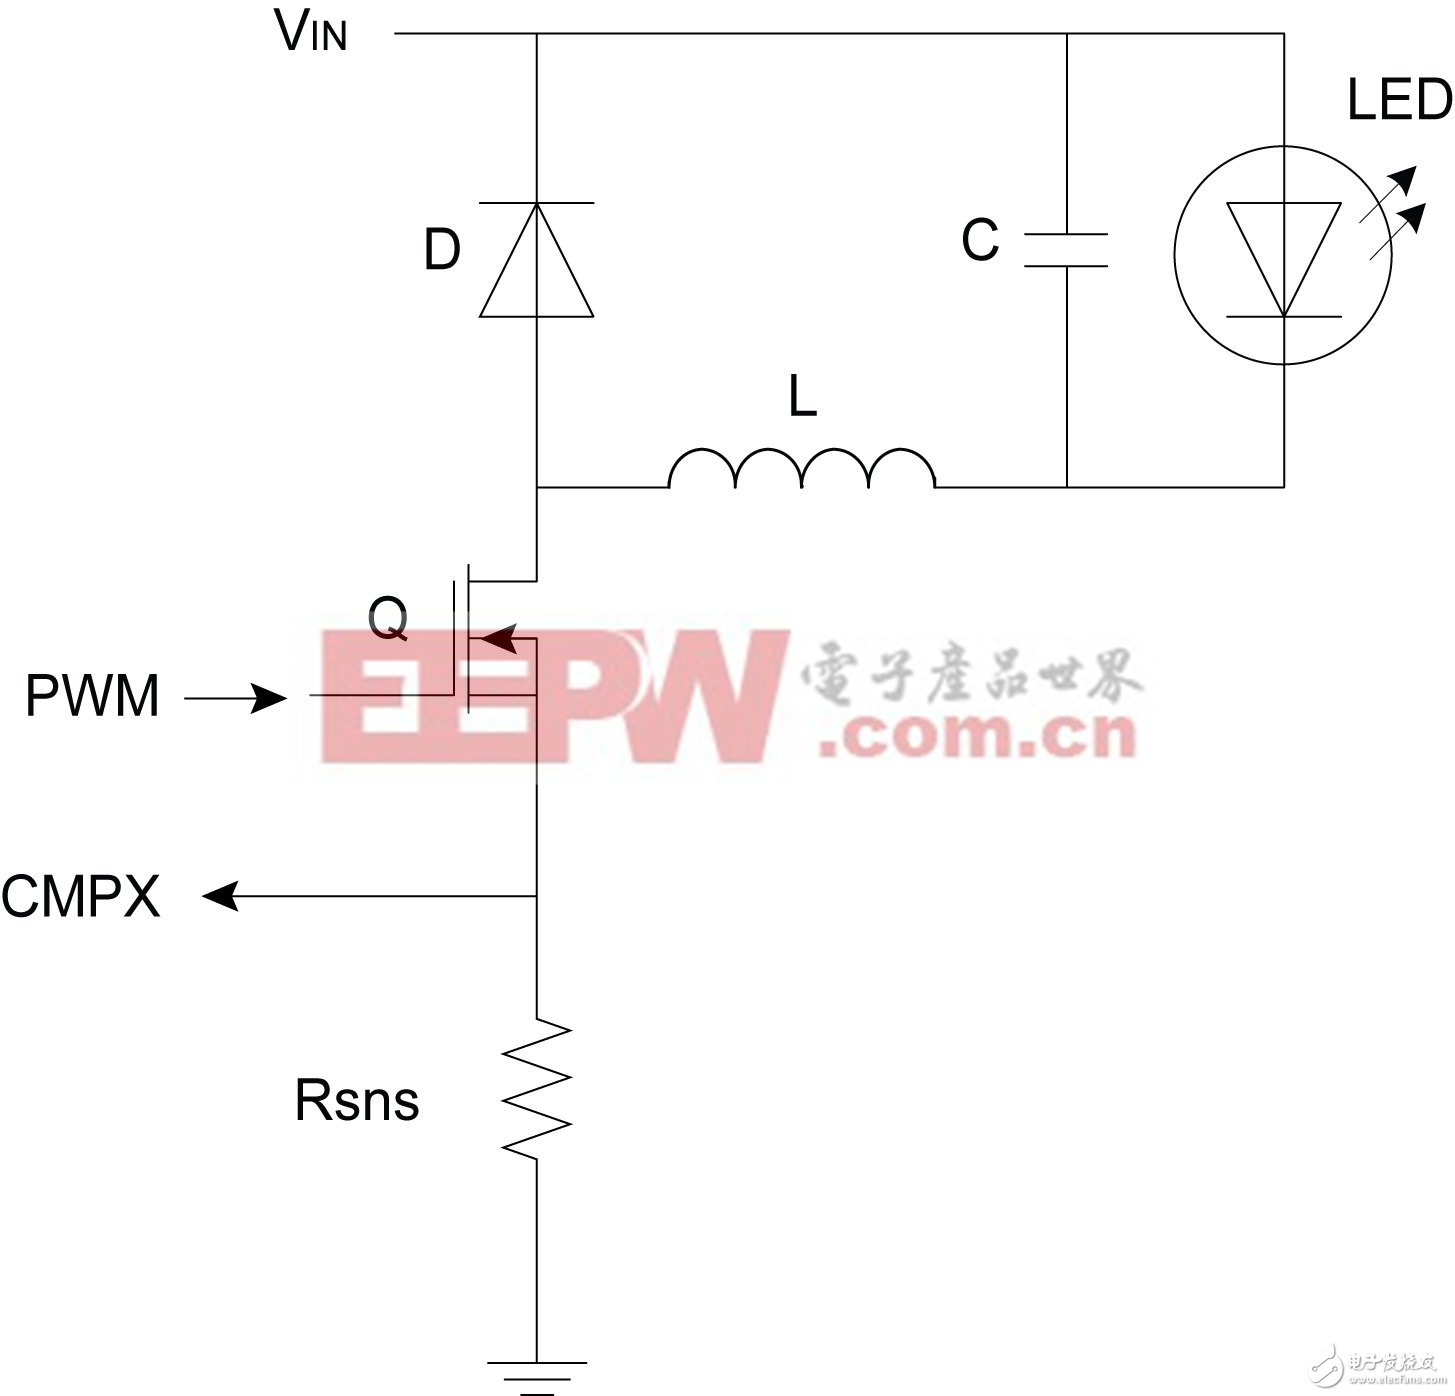 图5：配置为驱动LED或LED串的降压拓扑